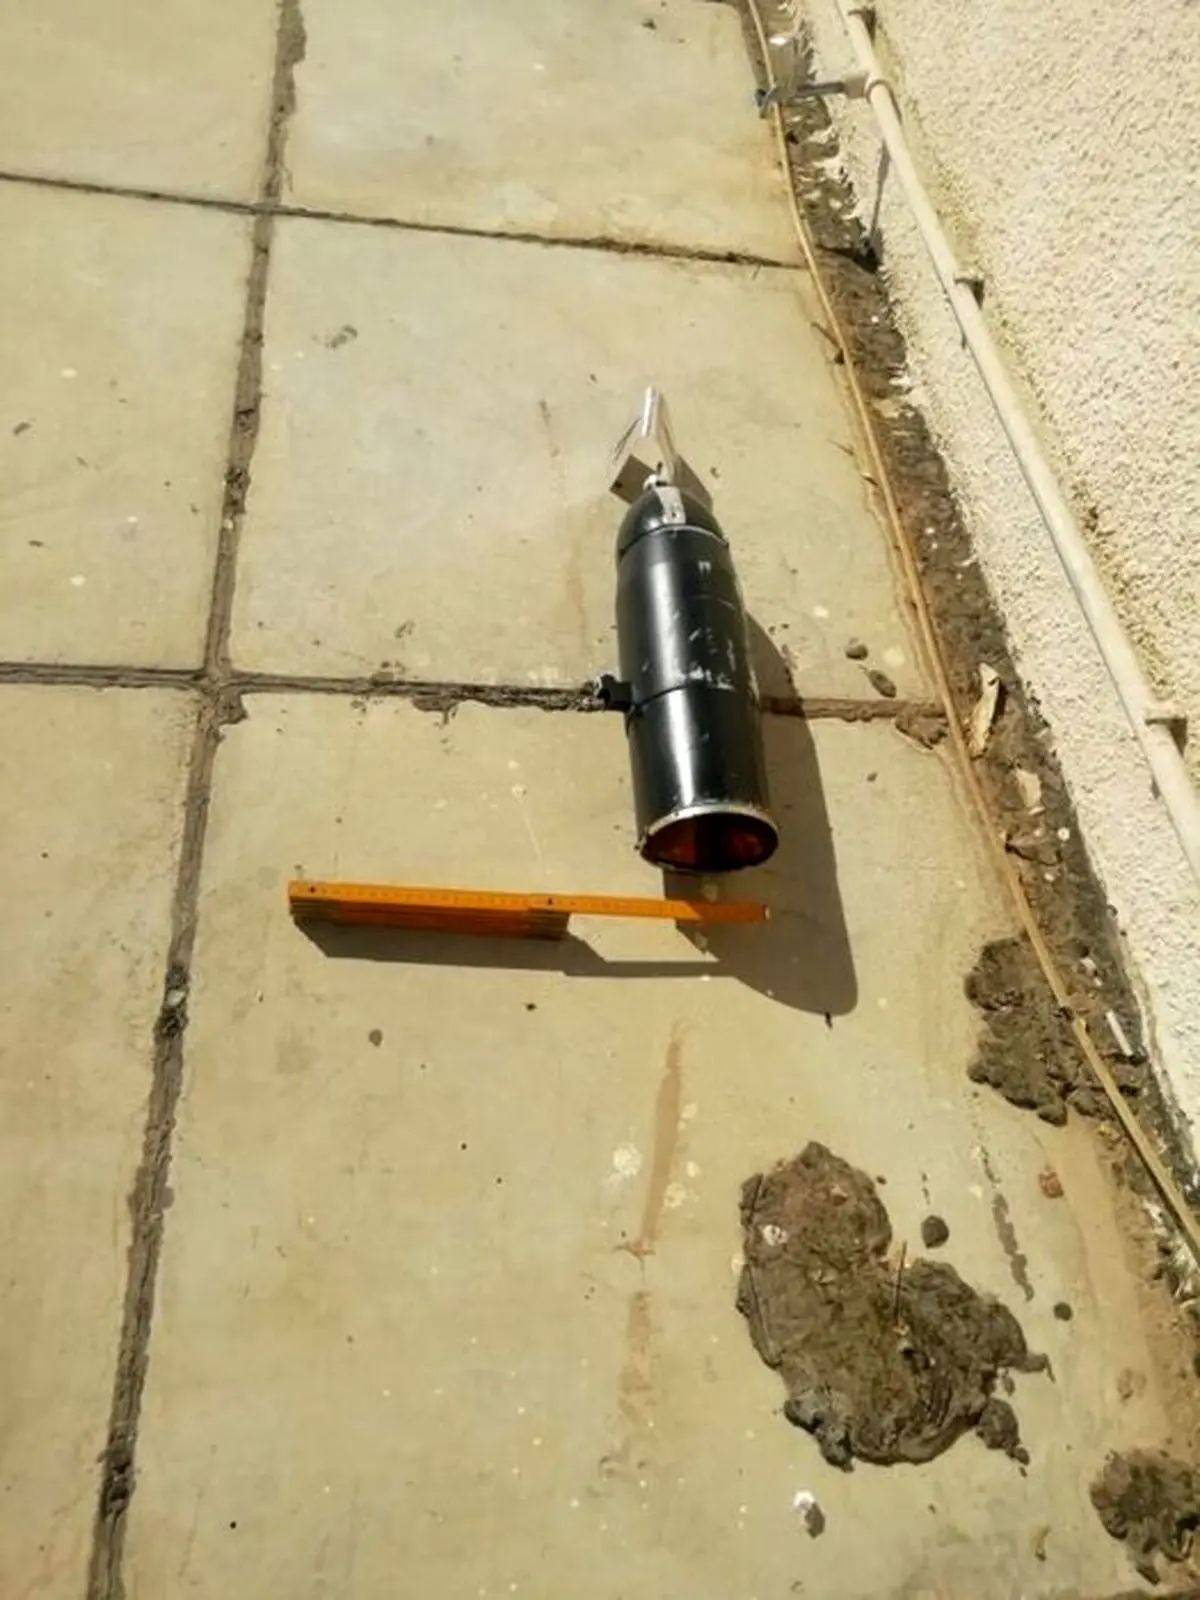 کشف راکت جنگی در خانه رئیس دولت!+ عکس